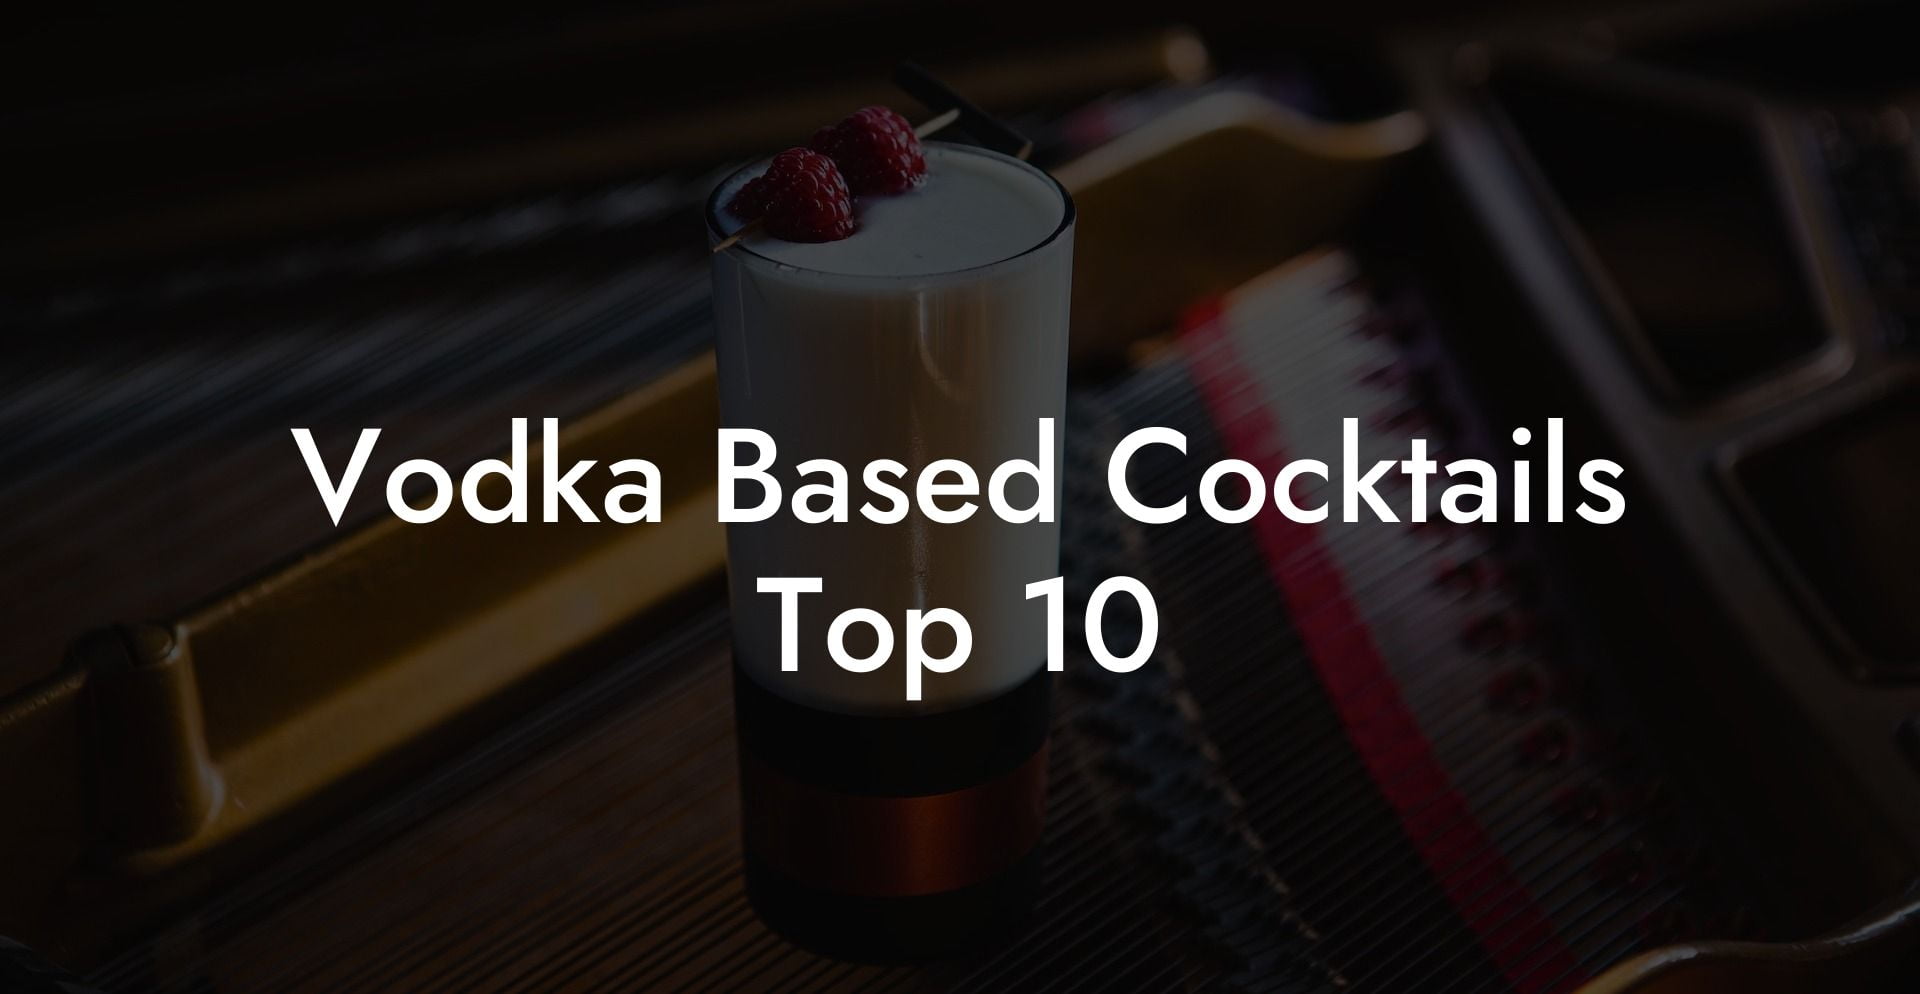 Vodka Based Cocktails Top 10